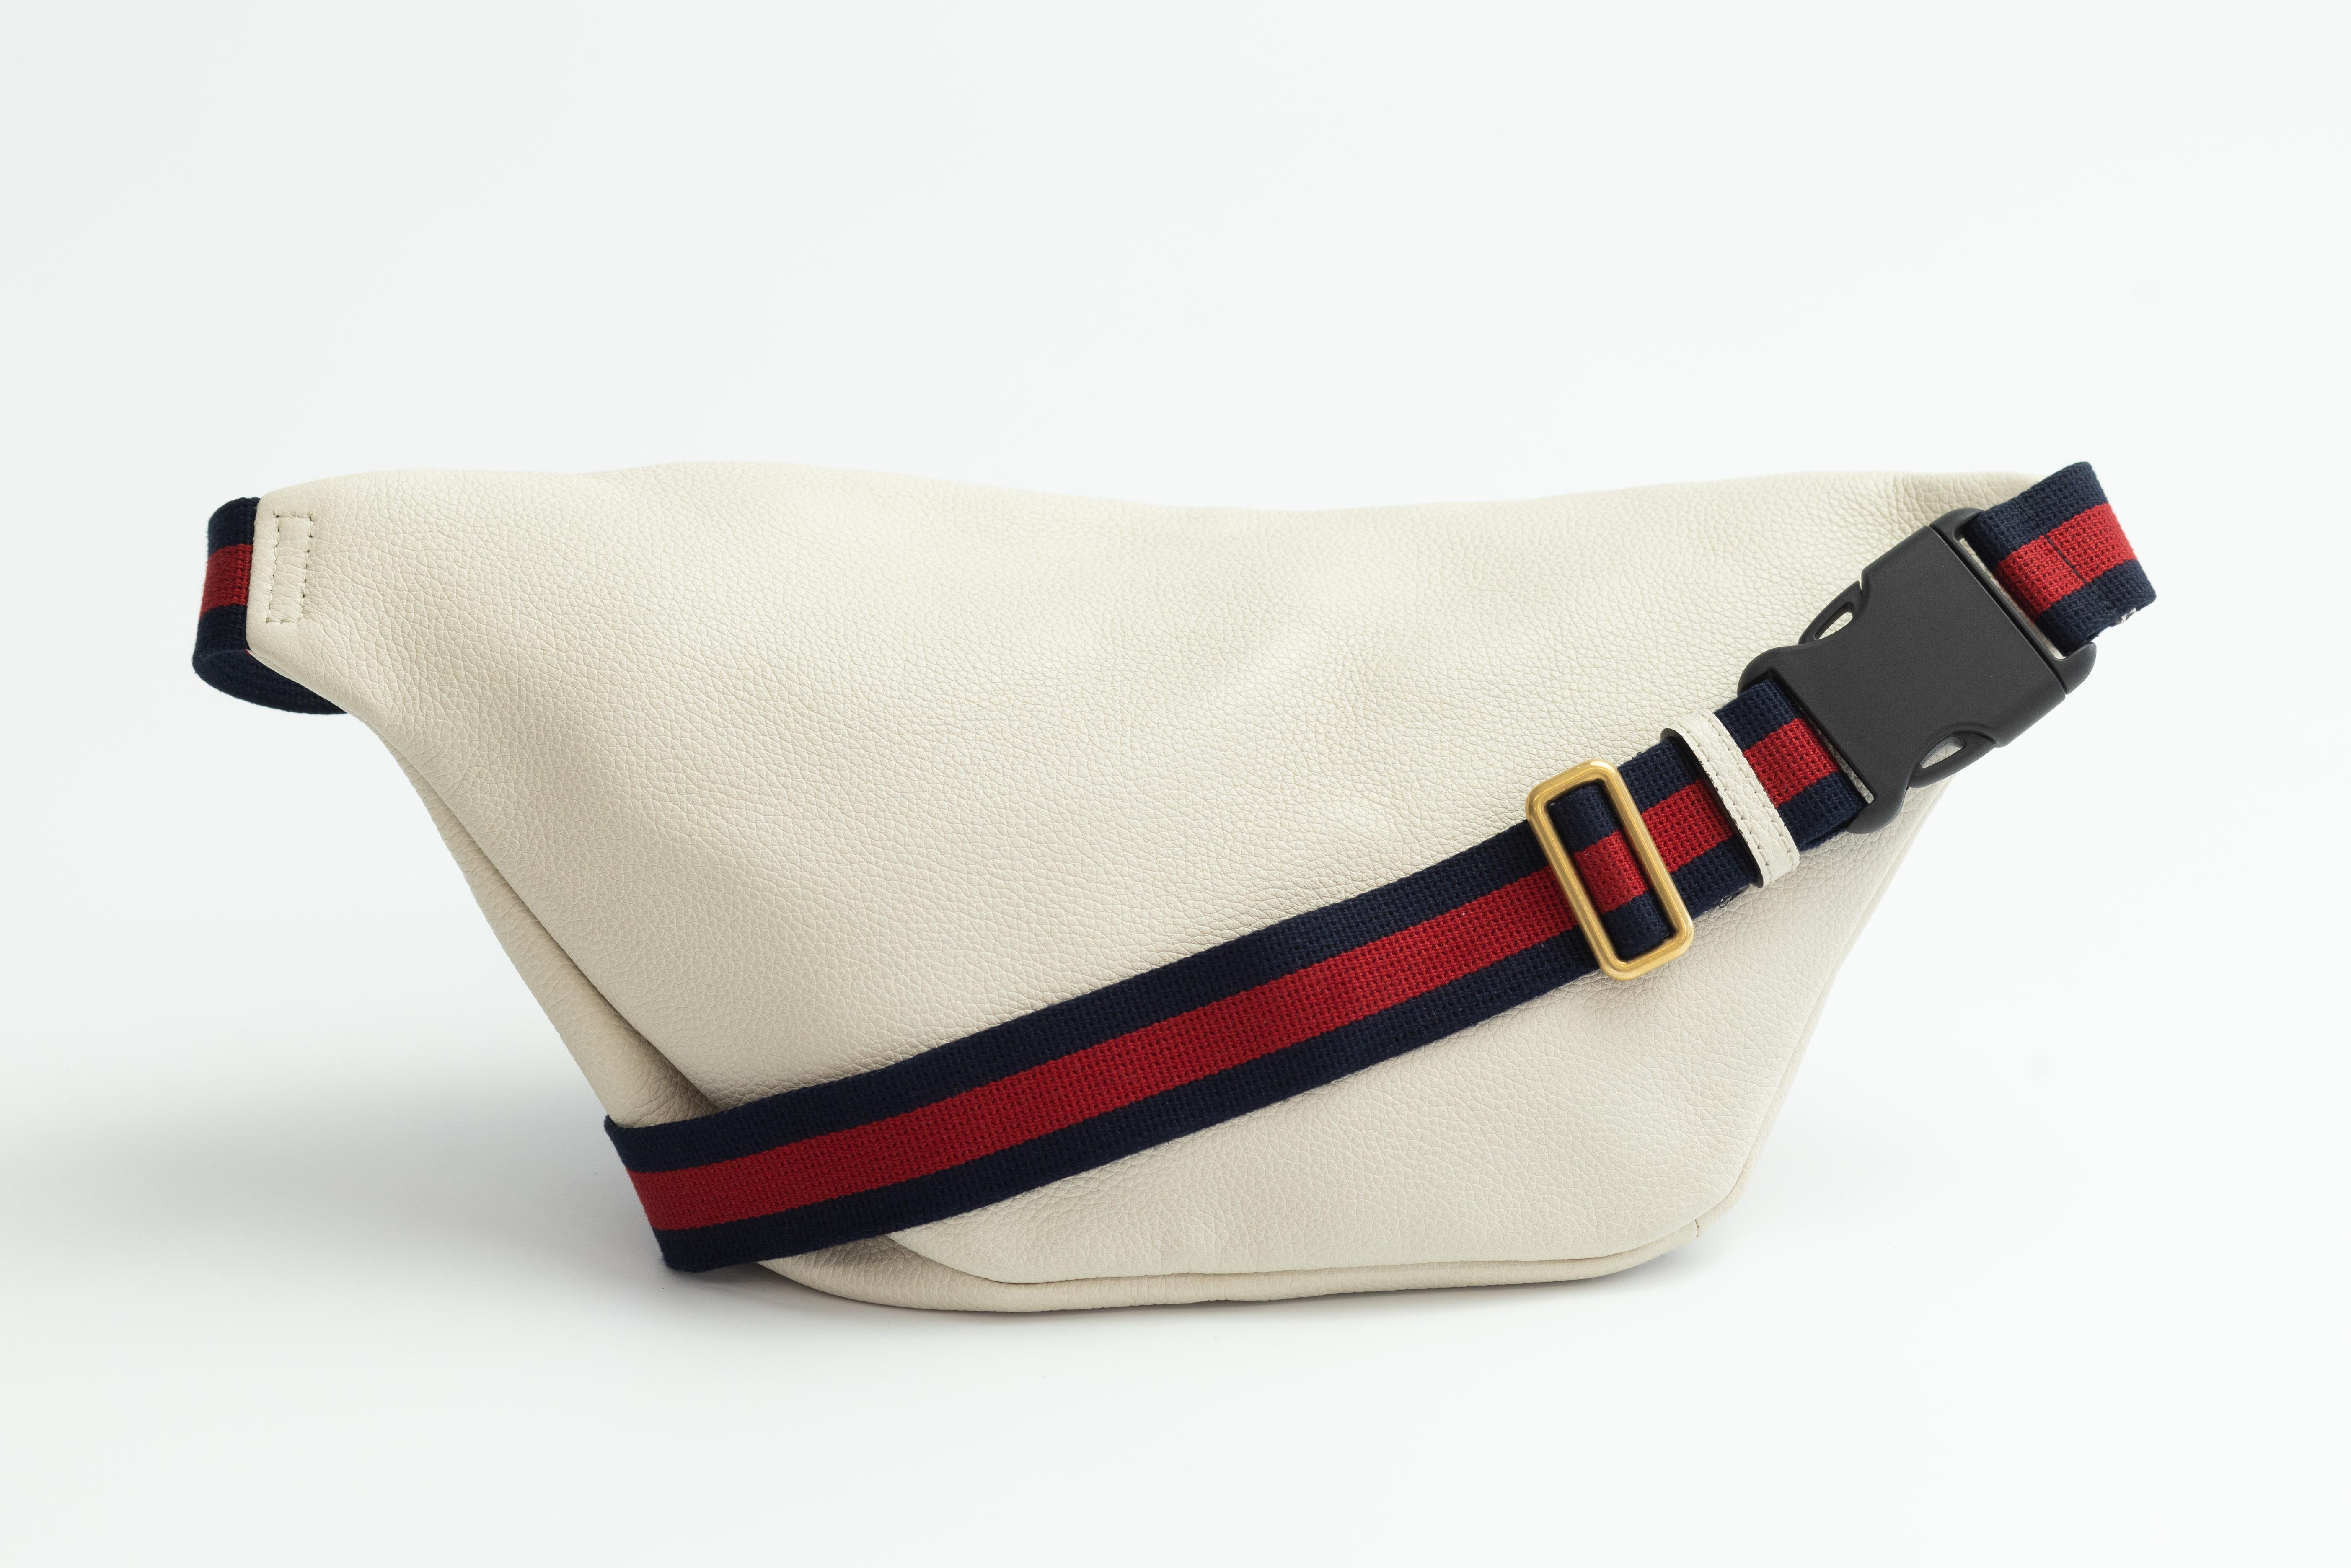 Ce sac ceinture est en cuir blanc avec un logo Gucci vintage. Ce sac est doté d'une ceinture en nylon marine et rouge réglable qui peut être portée comme sac de ceinture sur la hanche ou à la taille. La fermeture à glissière sur le devant s'ouvre